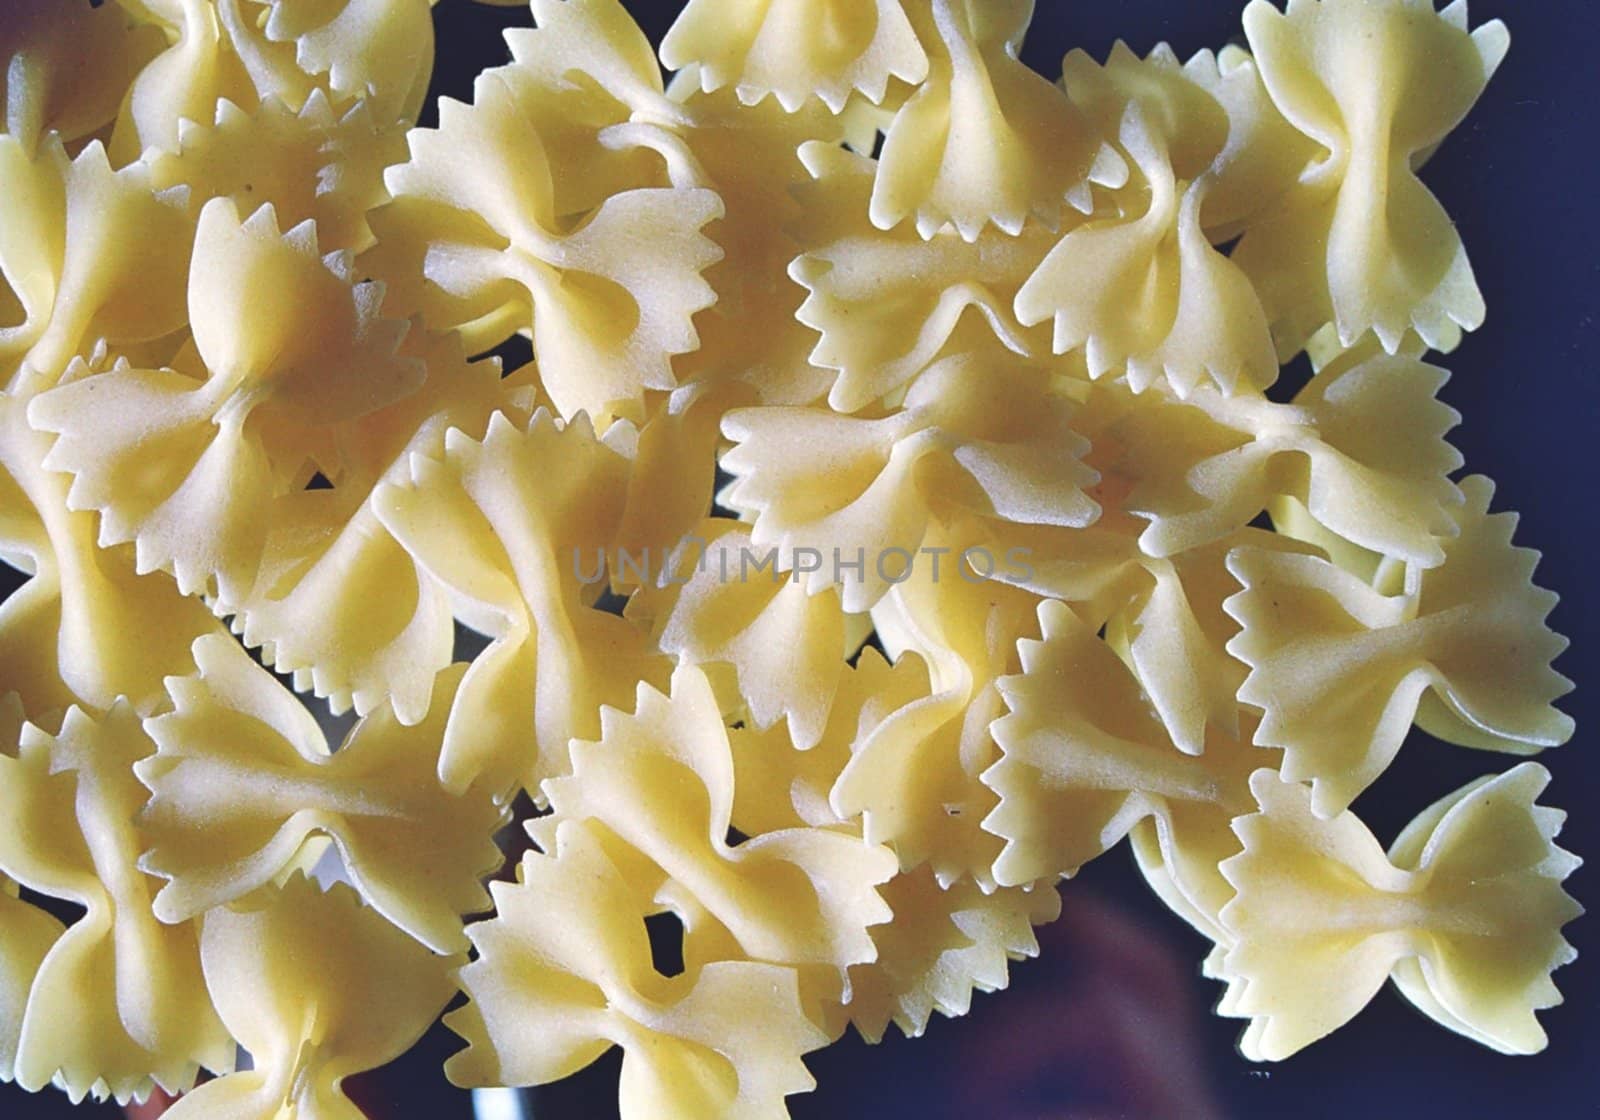 Farfalle pasta, uncooked